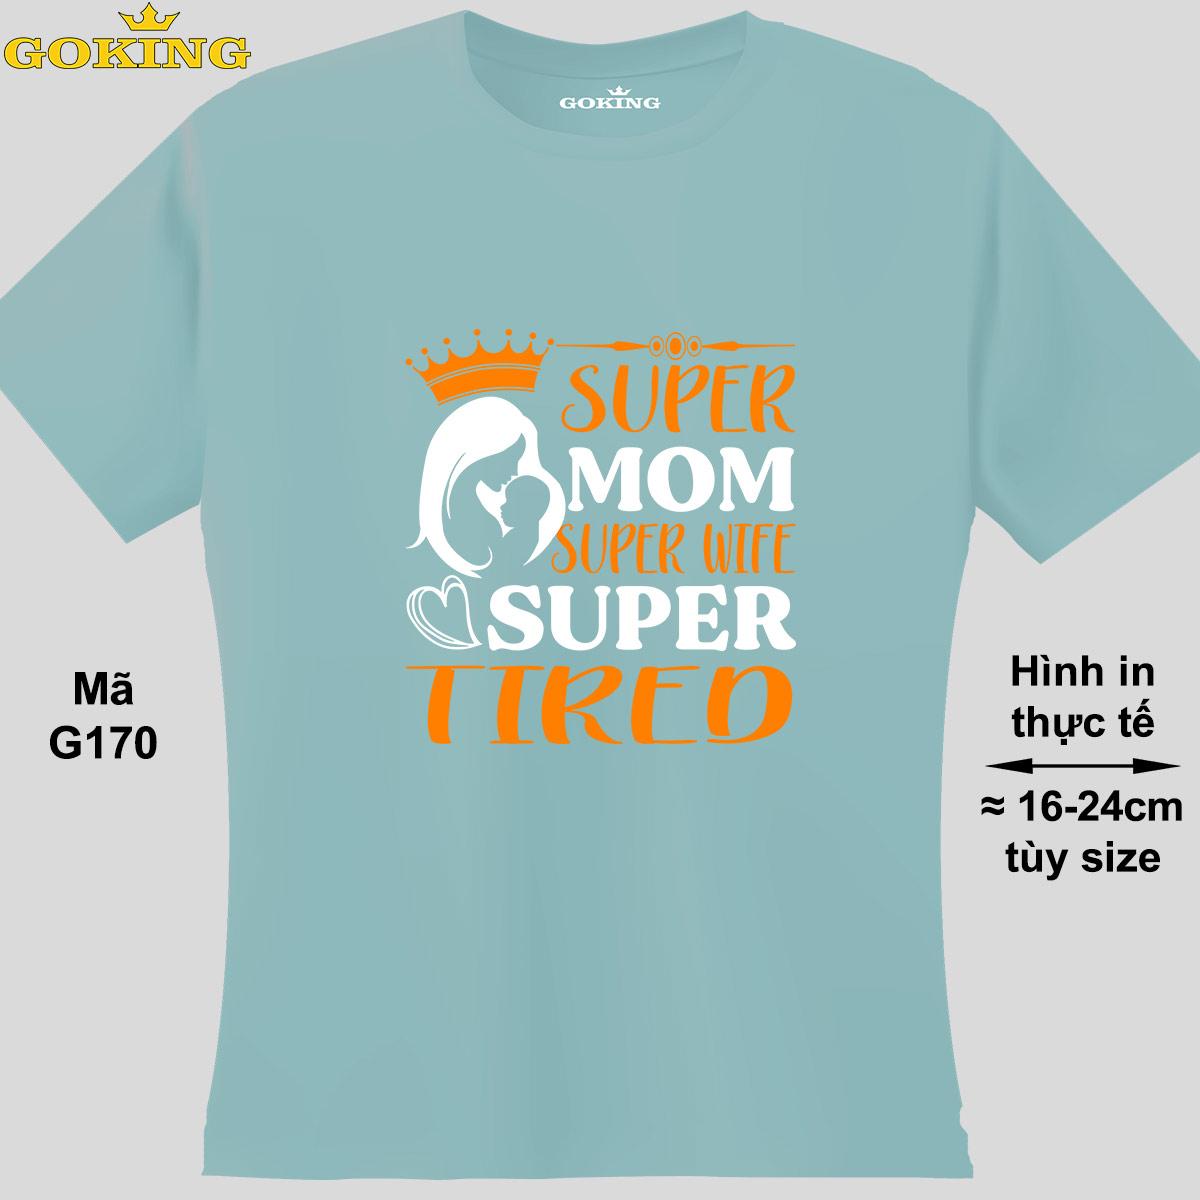 Super Mom Super Wife Super Tired, mã G170. Áo thun cá tính cho mẹ. Áo phông nữ thoát nhiệt Goking